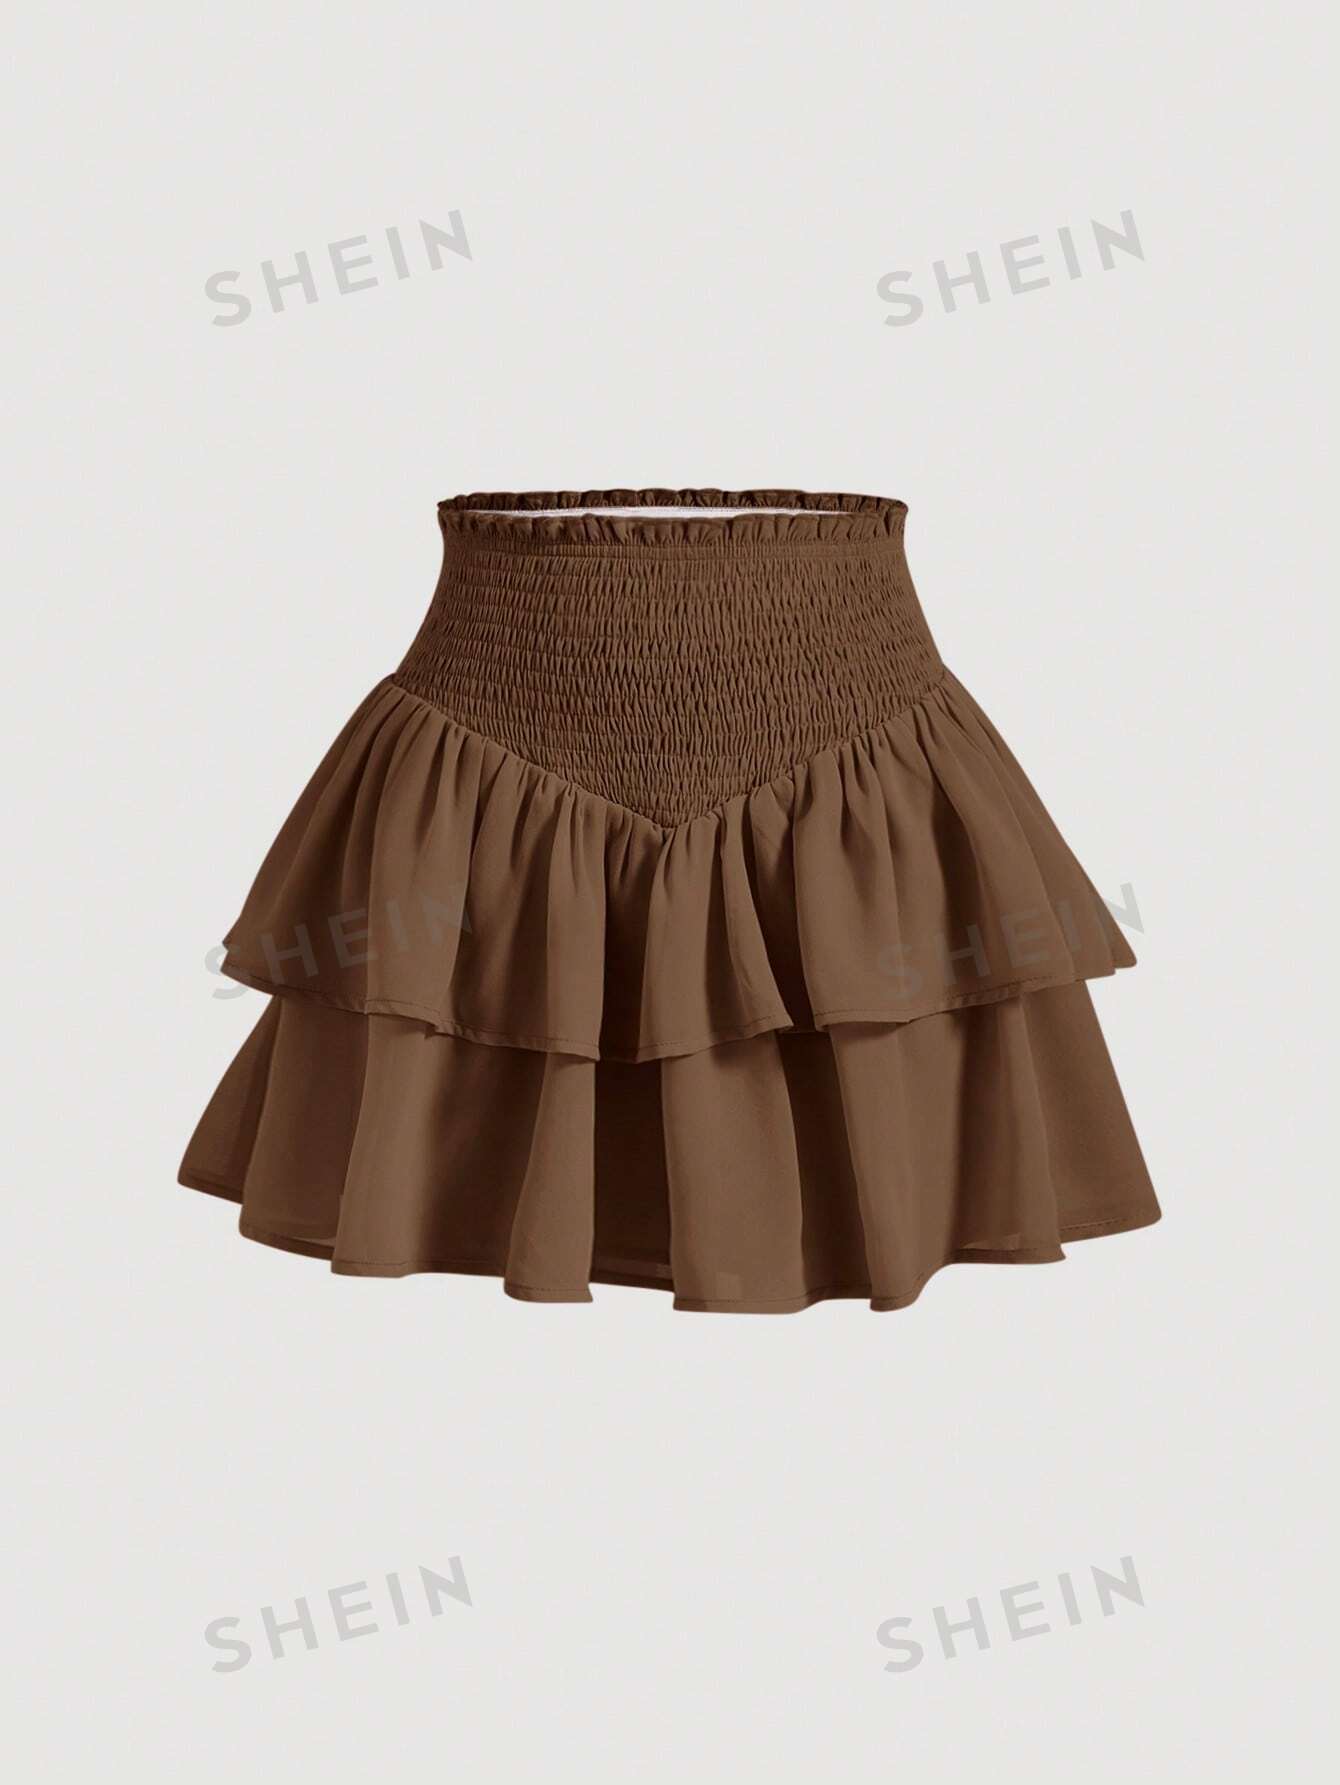 SHEIN MOD SHEIN MOD женская двухслойная мини-юбка с асимметричным подолом и рюшами и присборенной талией, коричневый юбка в стиле харадзюку с завышенной талией летняя повседневная готическая юбка трапеция с асимметричным подолом новая модная одежда для р